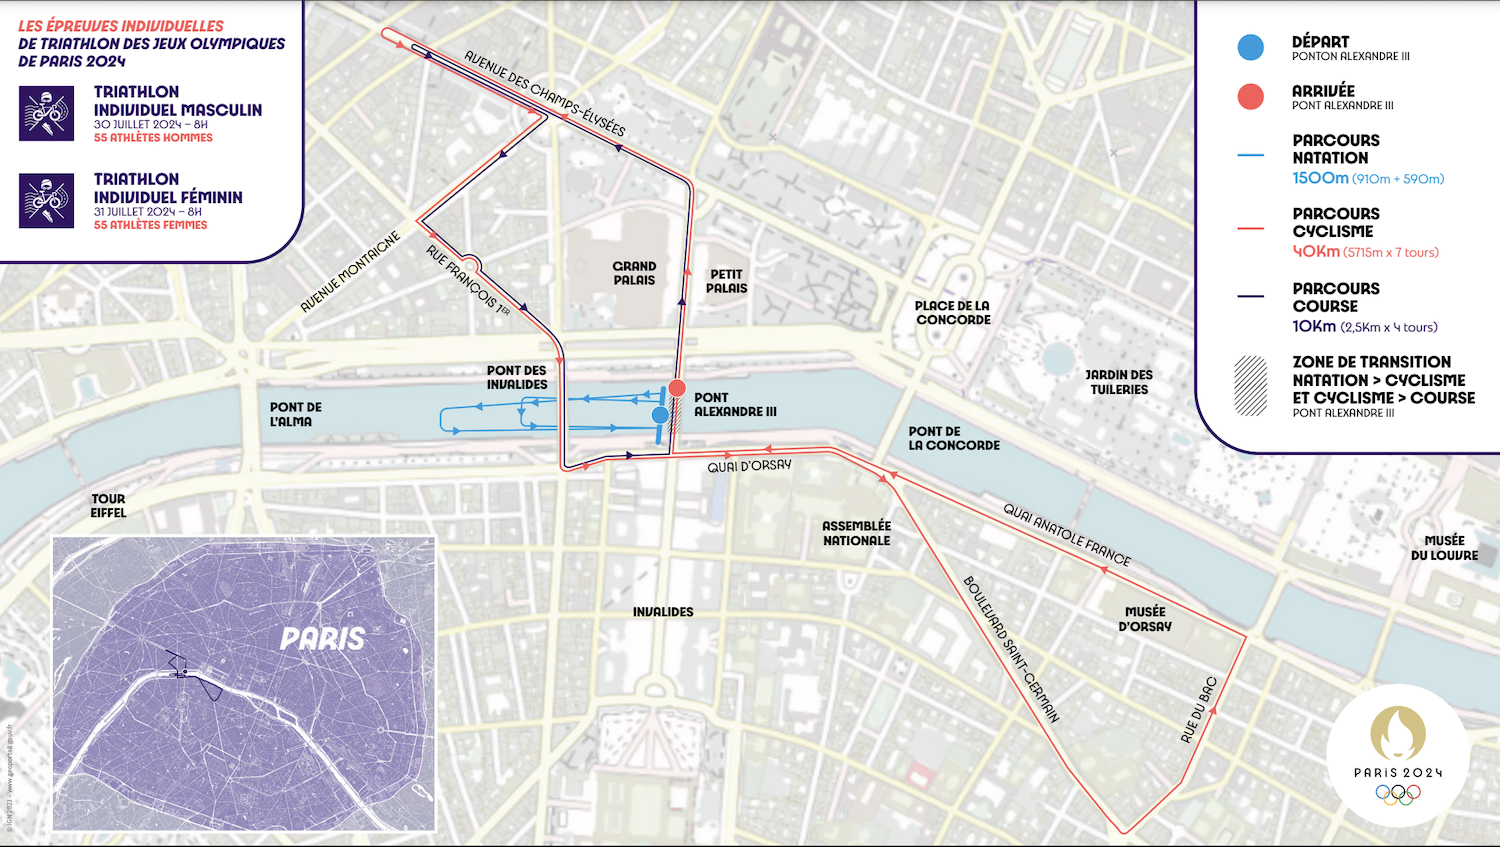 Paris 2024 triathlon individual course maps